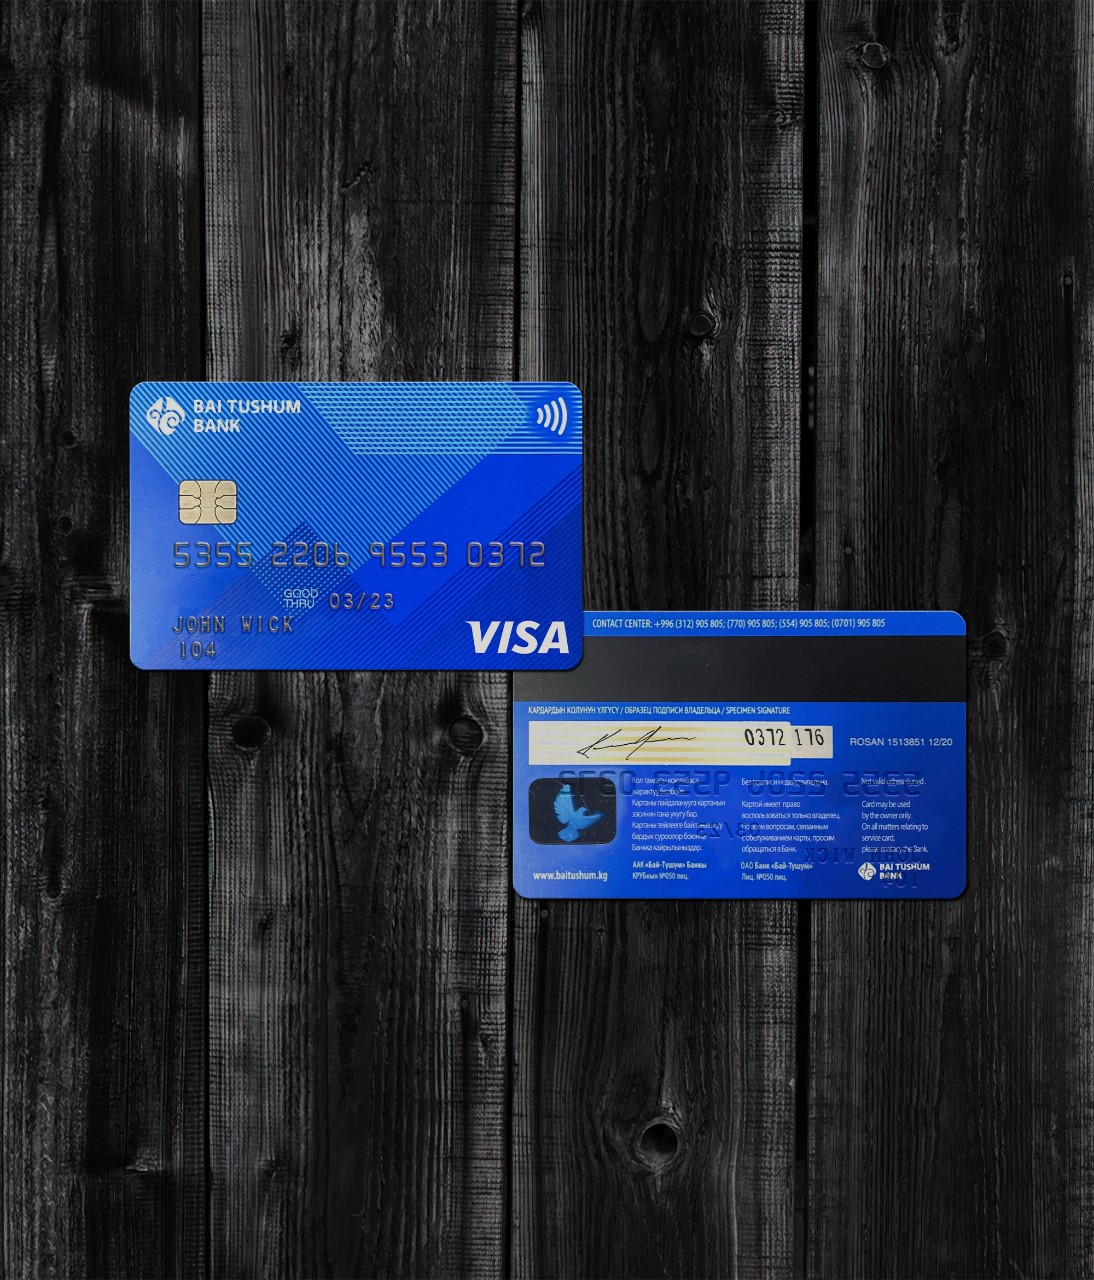 Bai Tushum Bank Credit Card PSD-1